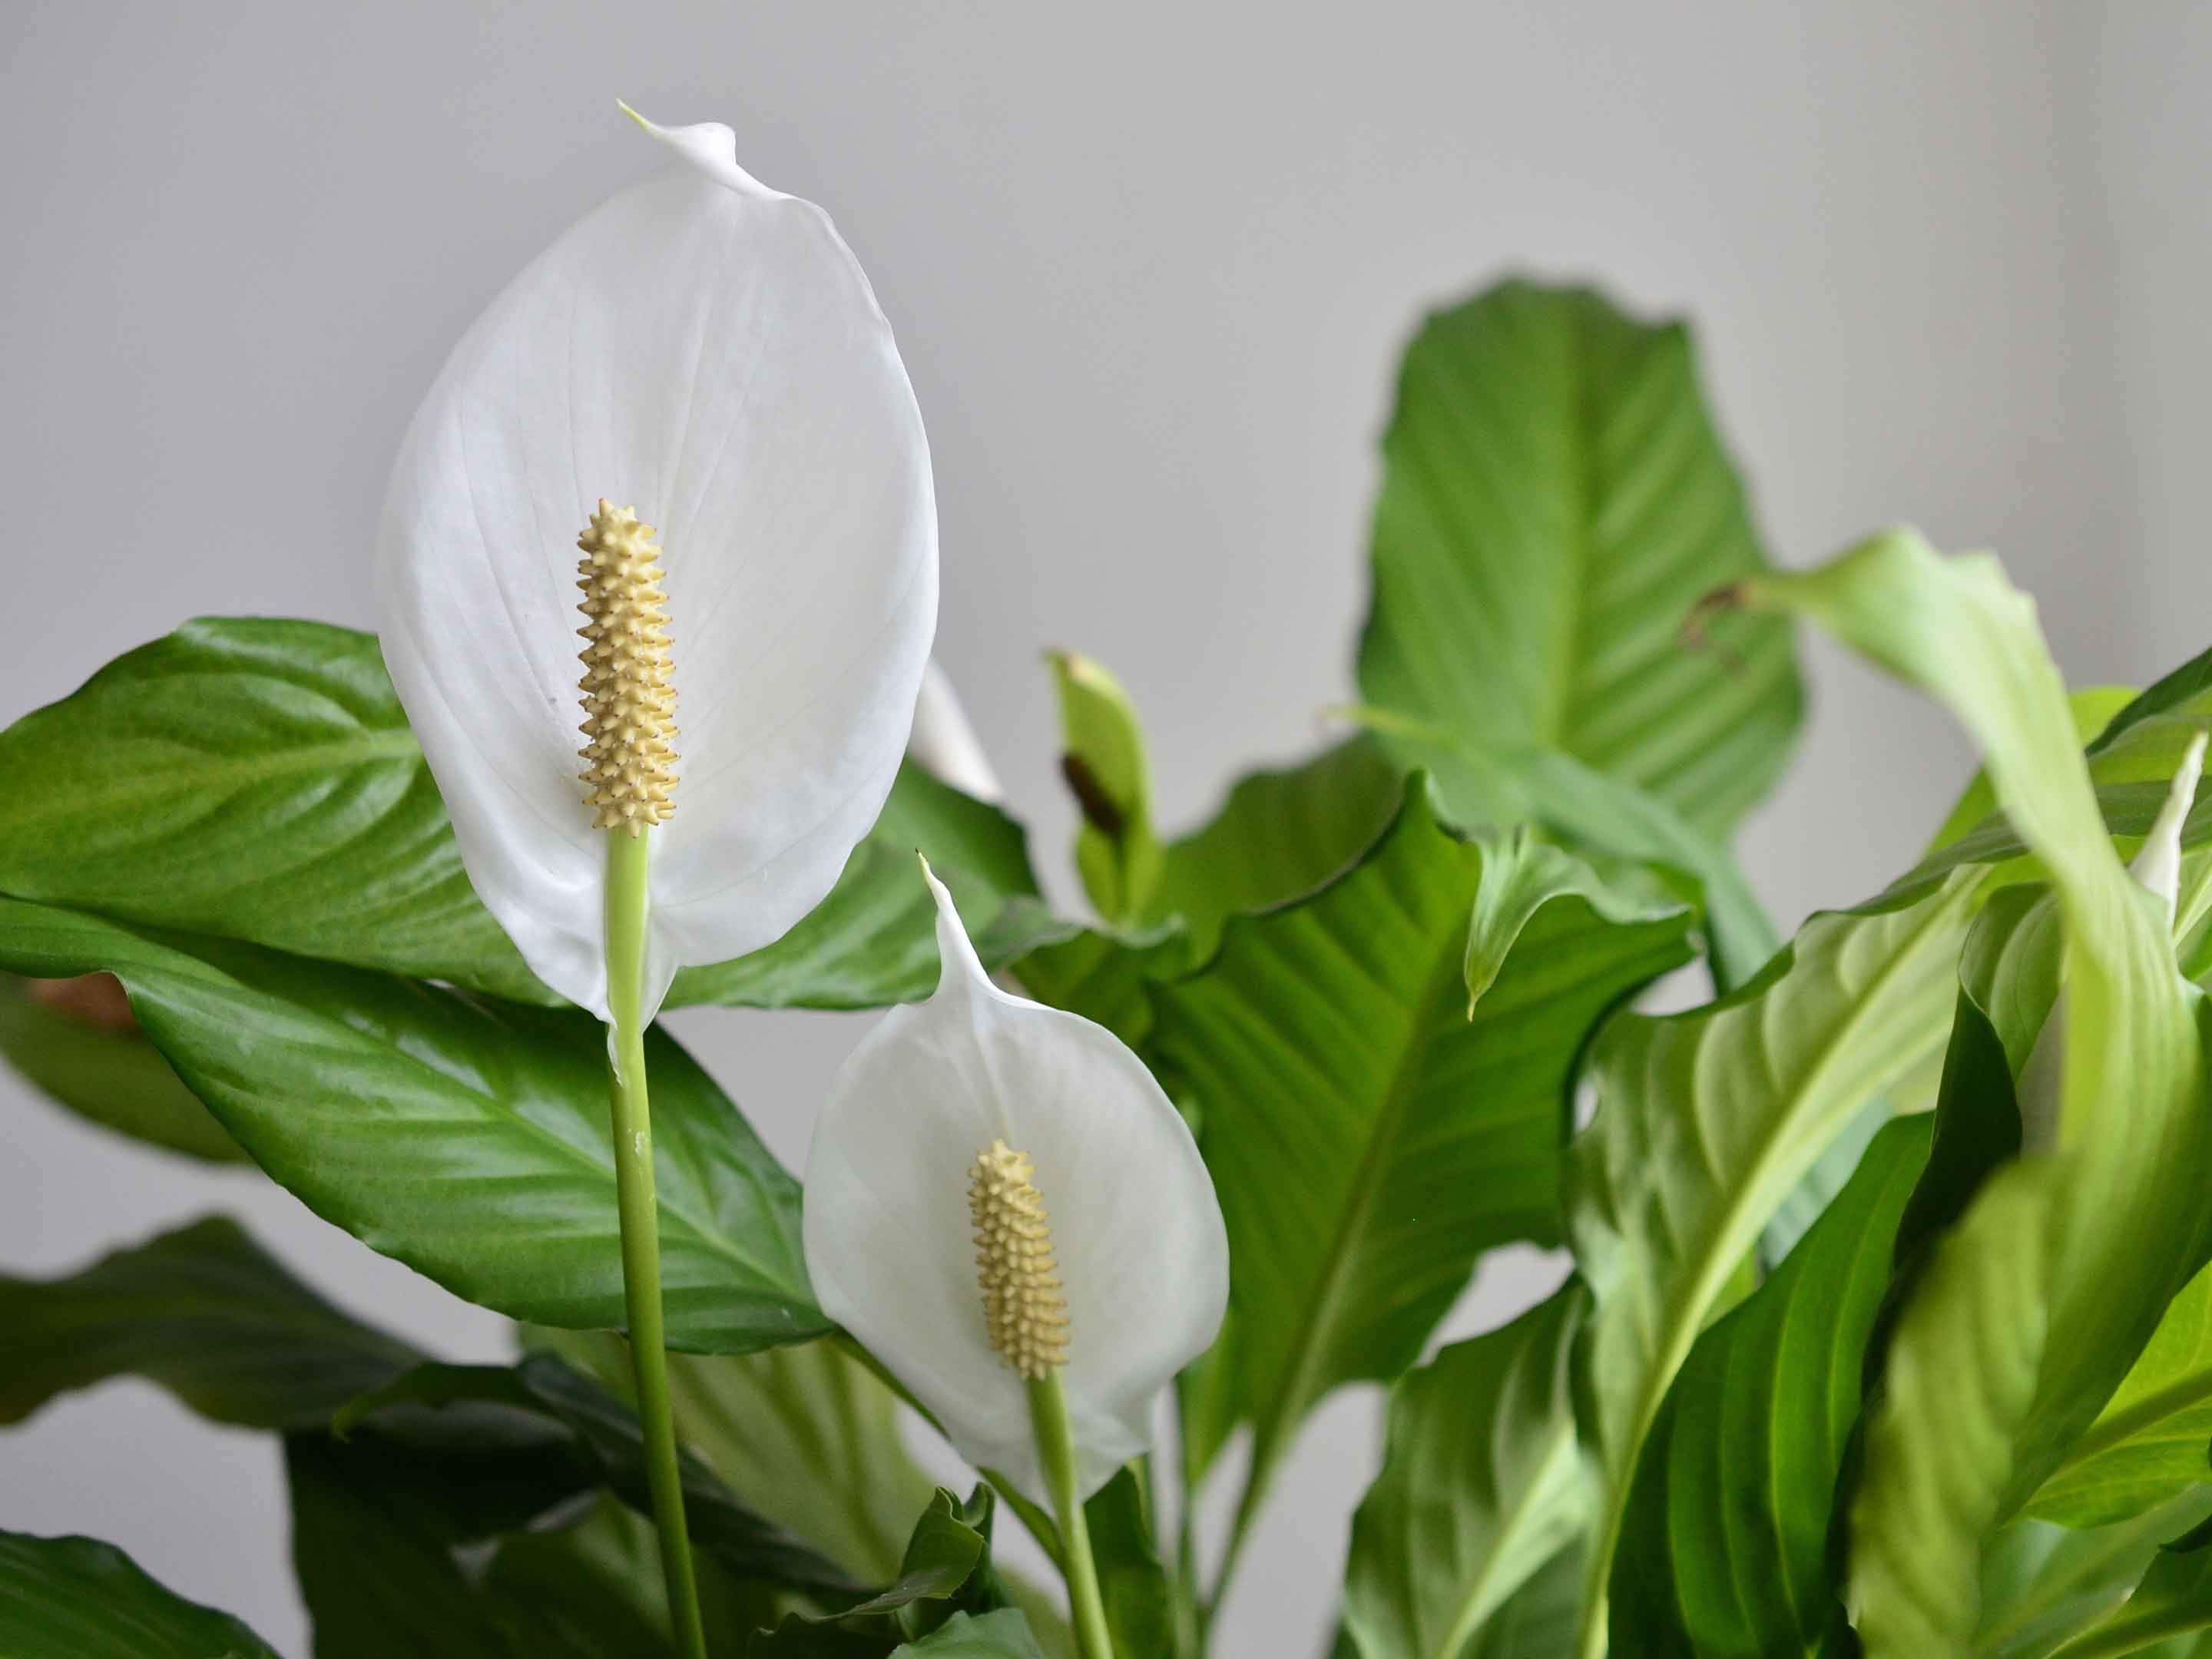 Spathiphyllum Blanc, la fleur de lune purificatrice d'air – La Green Touch